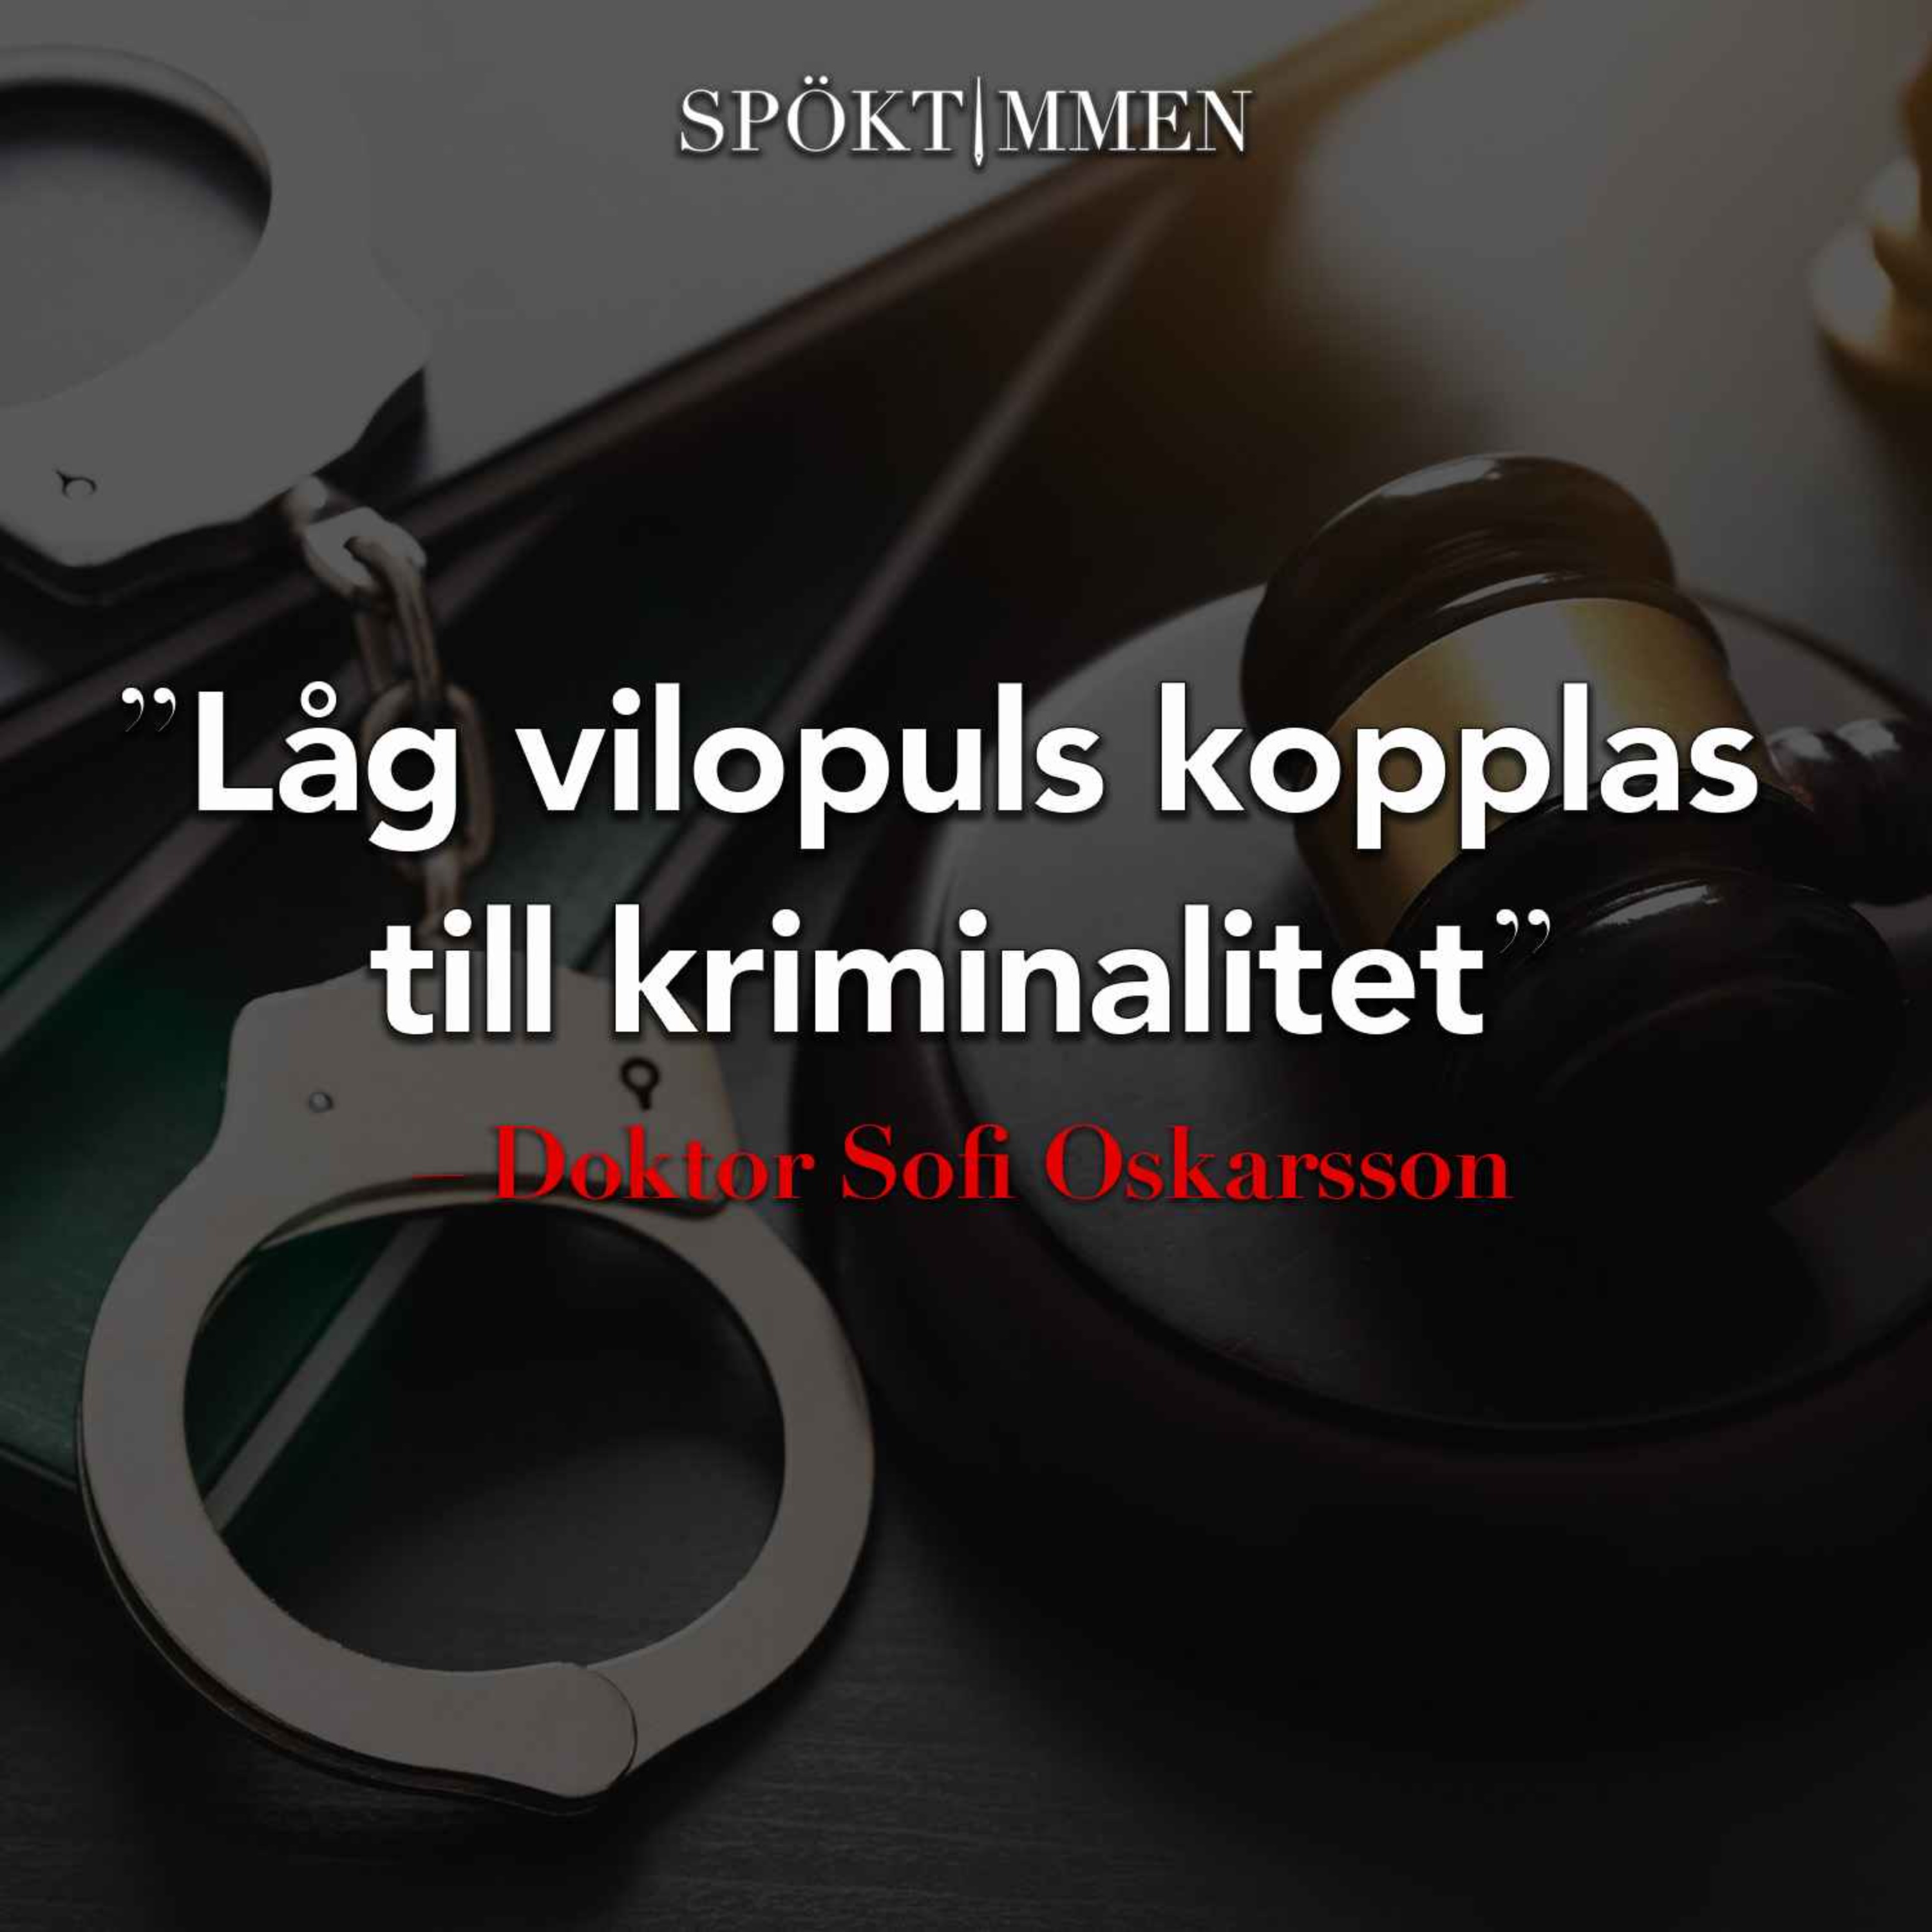 "Låg vilopuls kopplas till kriminalitet" – Doktor Sofi Oskarsson